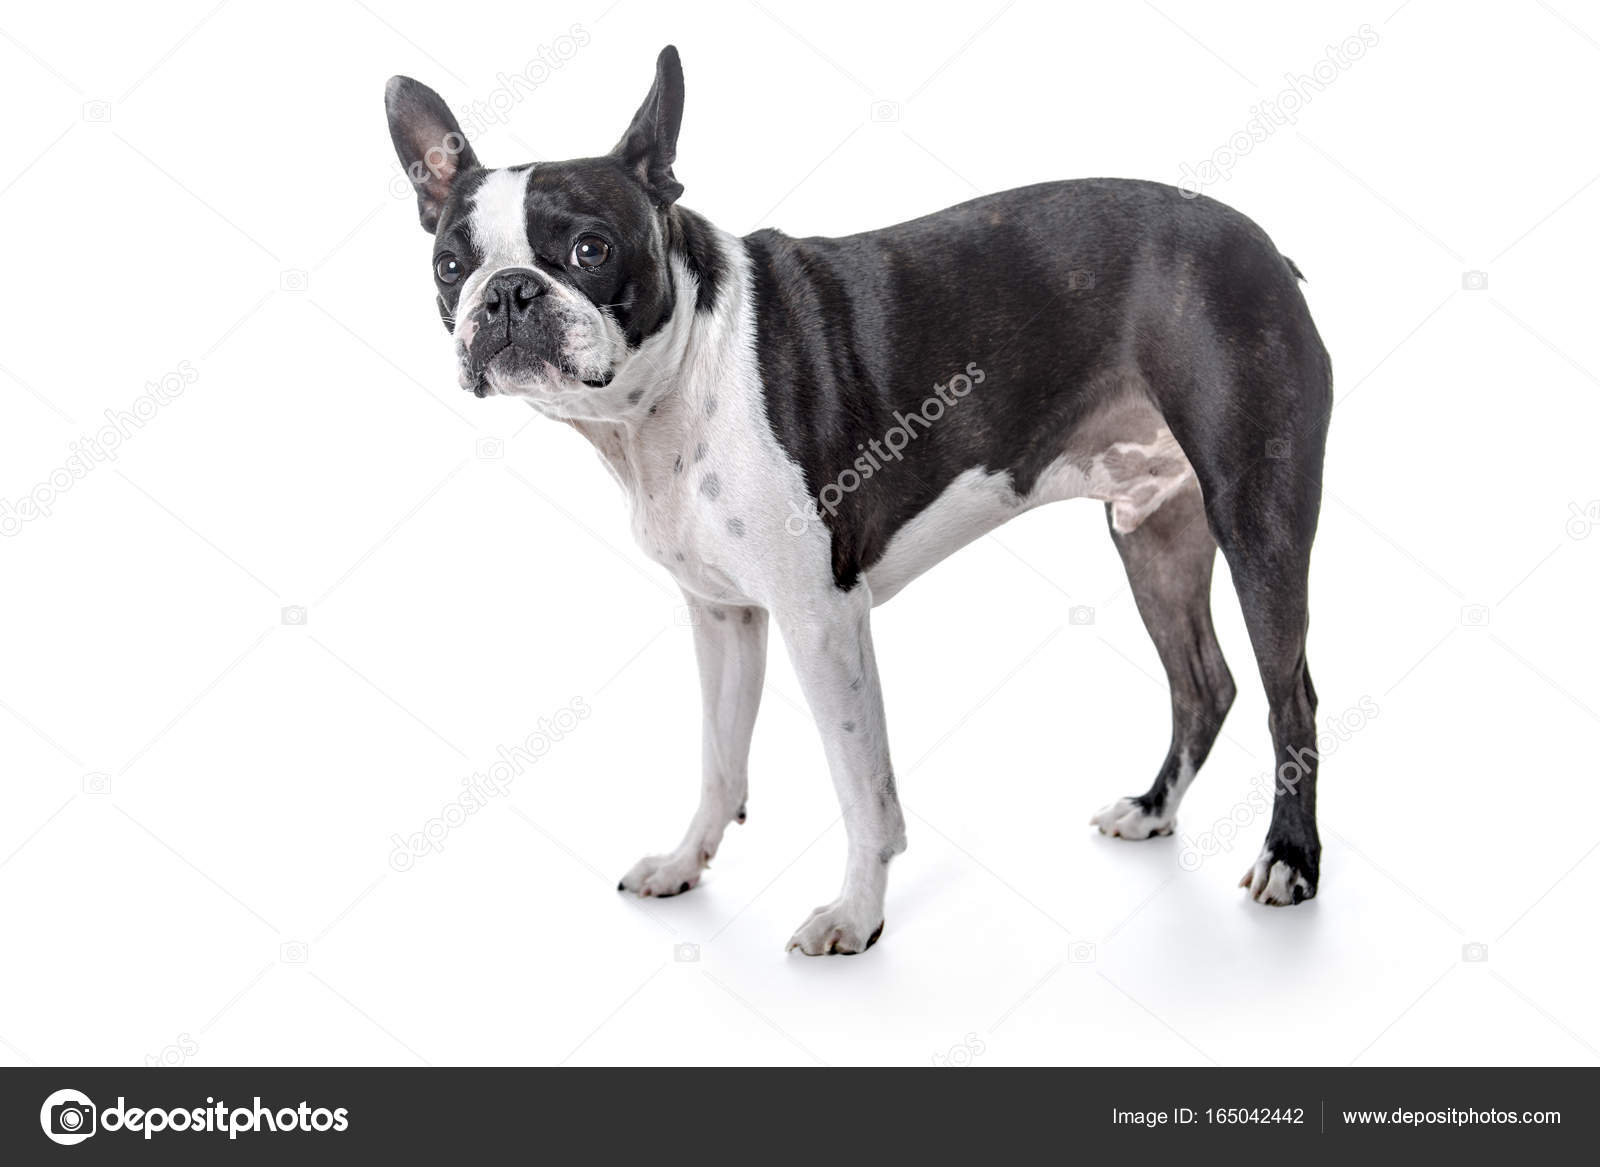 Boston terrier, beyaz arka plan duran Stok fotoğrafçılık